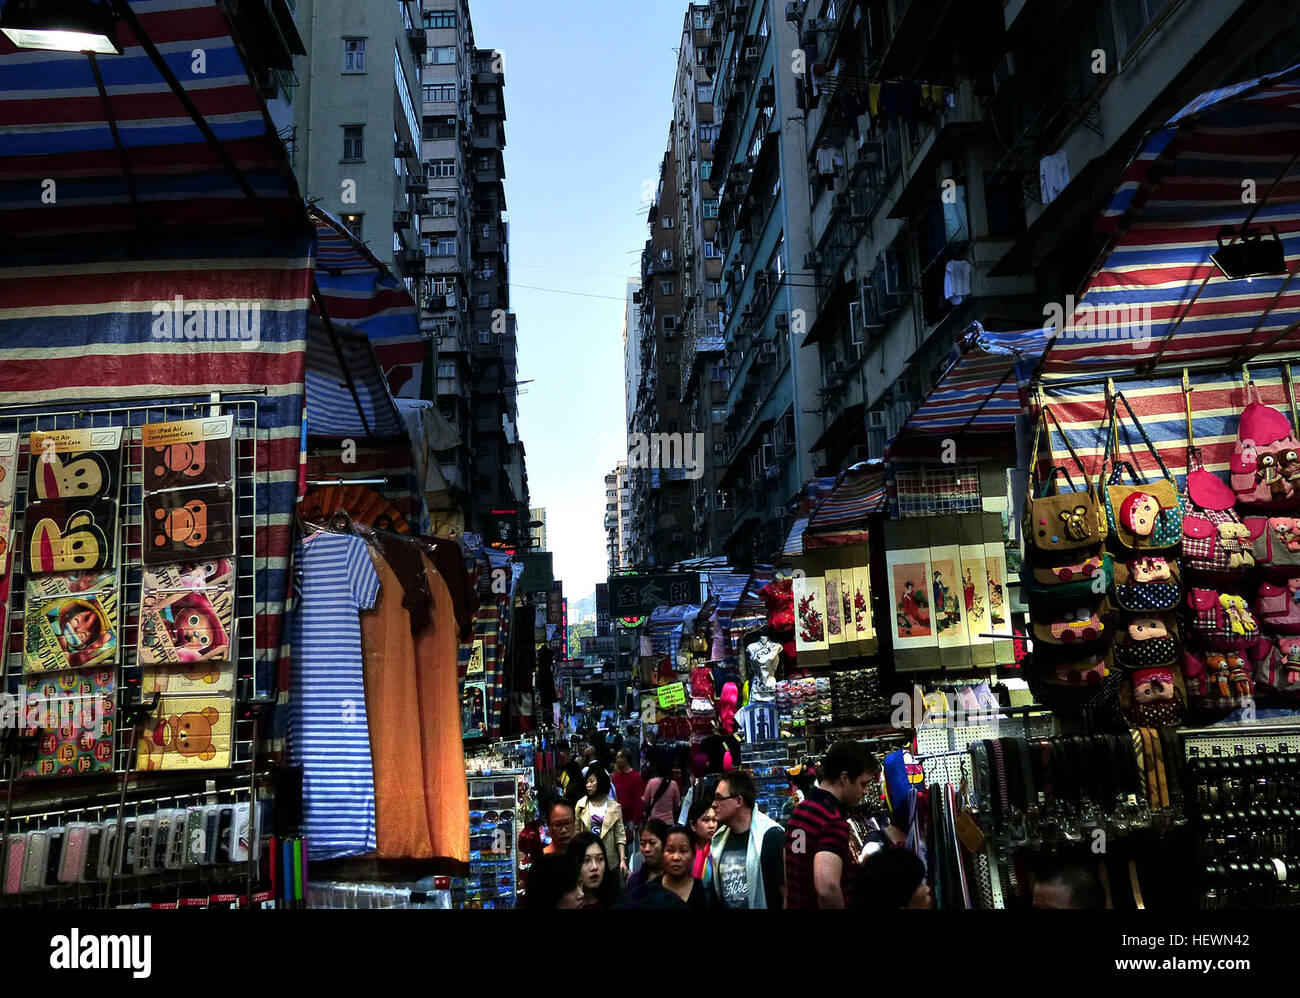 Les Dames (nuit) marché est la couronne de la rue Mongkok, scène de marché mieux vu en début de soirée avant que le trafic touristique est alourdi ou à la nuit lorsque le marché est en plein essor. Ici il semble qu'il y toujours quelque chose de nouveau, intéressant, pratique ou simplement le plaisir d'acheter. Le marché des dames est un bon endroit pour passer de 60 à 90 minutes, peut-être plus longtemps si vous vous amusez. La plupart des étals vendent les mêmes articles alors n'ayez pas peur de magasiner un peu. Les prix peuvent rapidement tomber 33-75 % quand ils savent que vous n'êtes pas rapide à acheter. Vous pouvez viser 50 % prix demandé si vous êtes un professionnel chevronné, haggler otherwis Banque D'Images